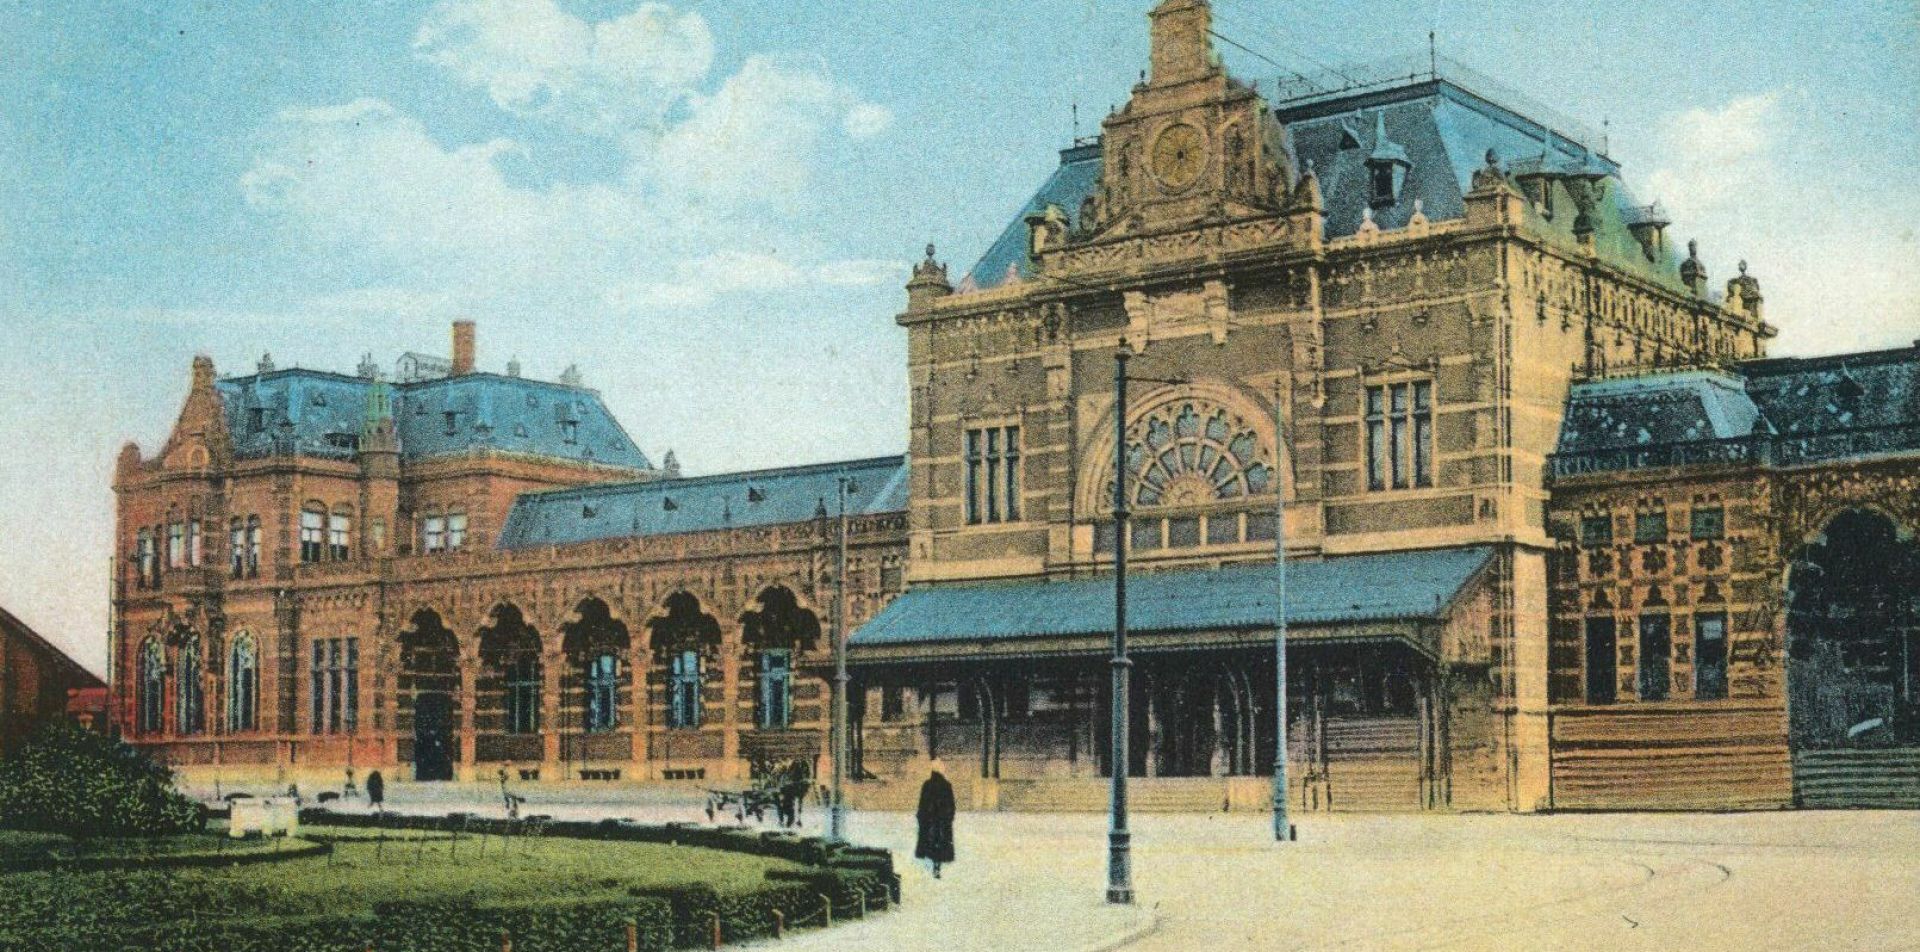 Station Groningen; van 1866 tot nu